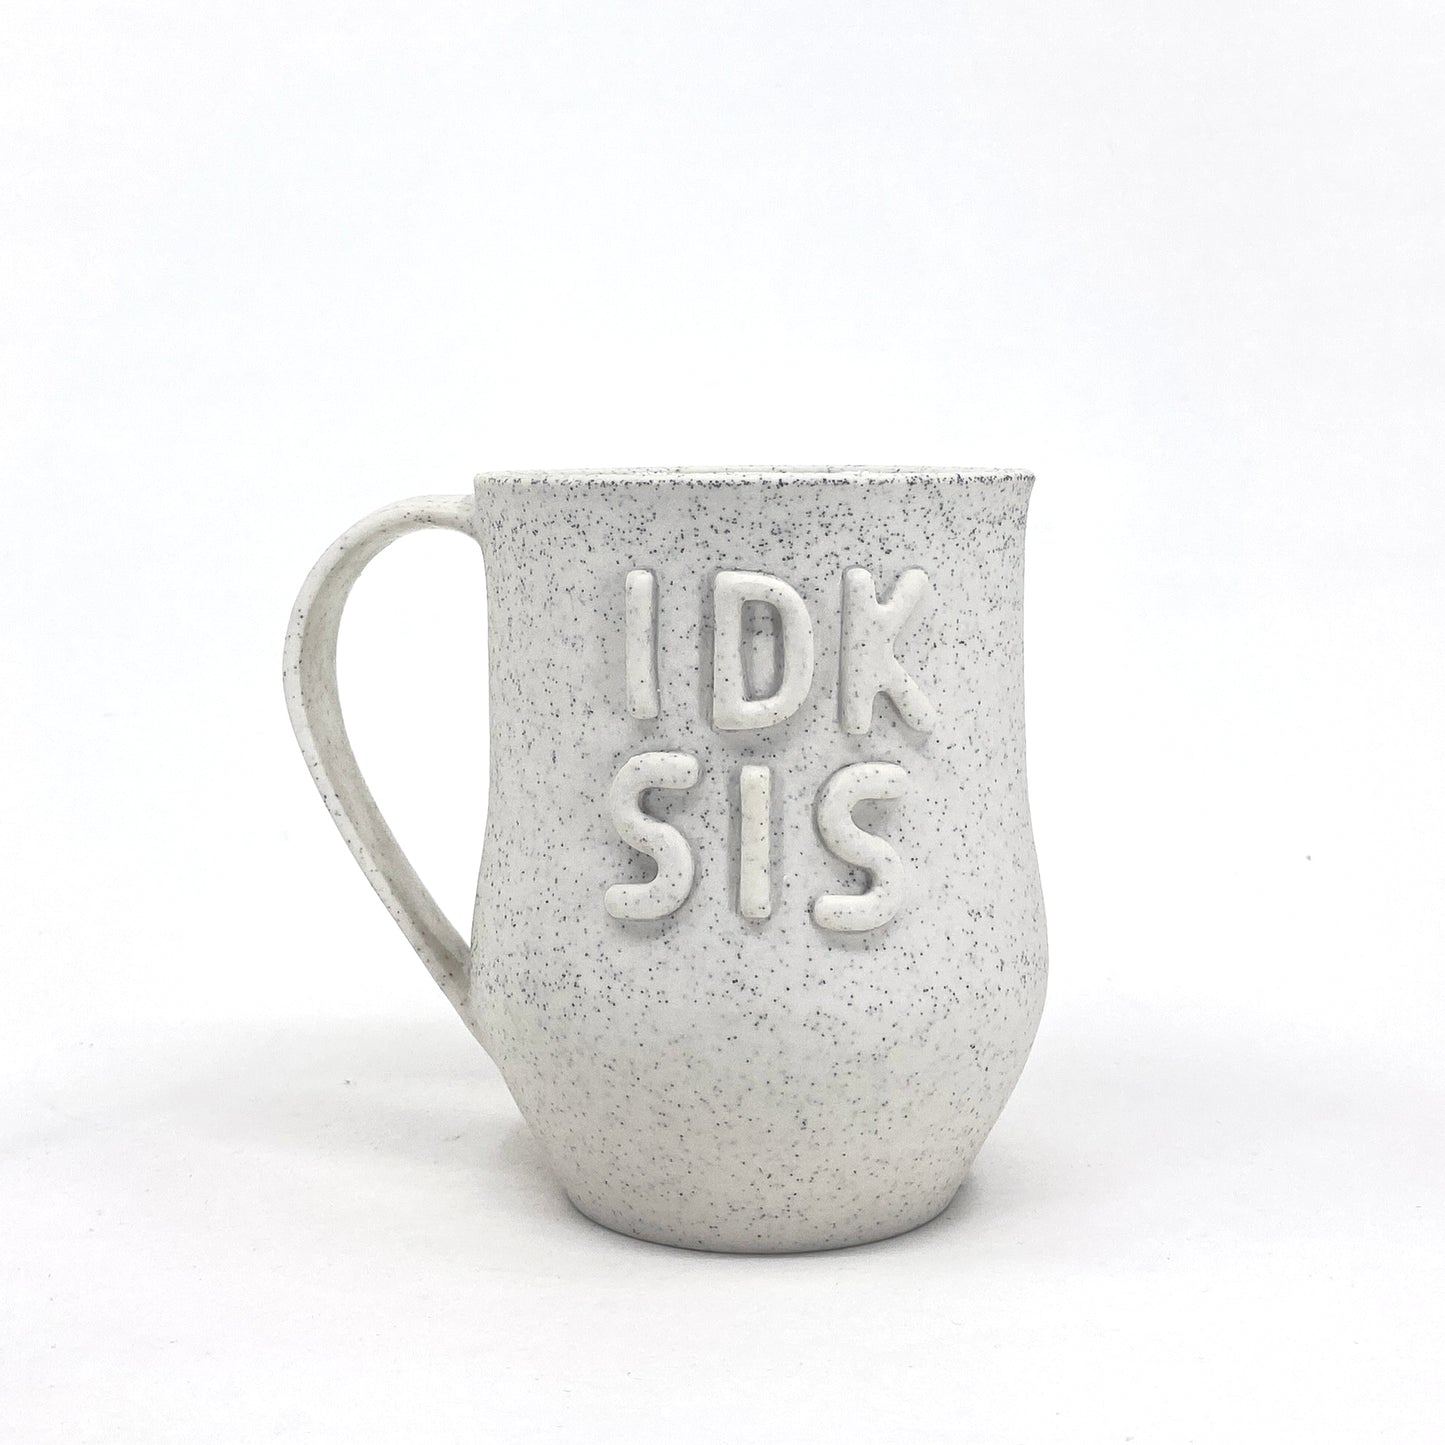 IDK SIS Mug